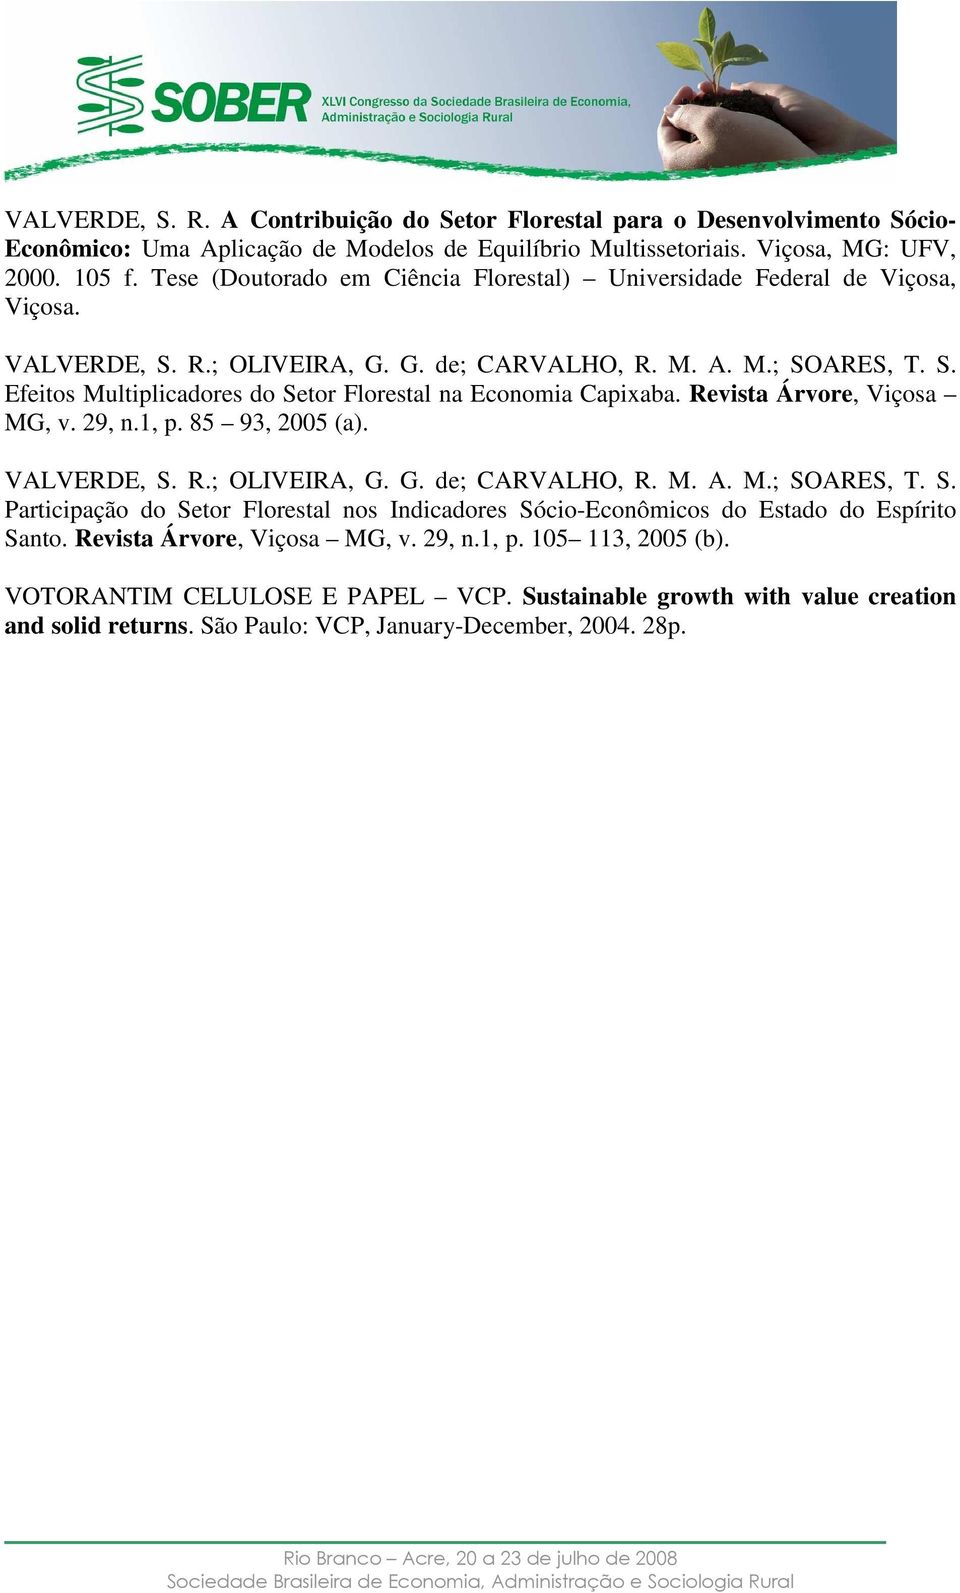 Revista Ávoe, Viçosa MG, v. 29, n.1, p. 85 93, 2005 (a). VALVERDE, S. R.; OLIVEIRA, G. G. de; CARVALHO, R. M. A. M.; SOARES, T. S. Paticipação do Seto Floestal nos Indicadoes Sócio-Econômicos do Estado do Espíito Santo.